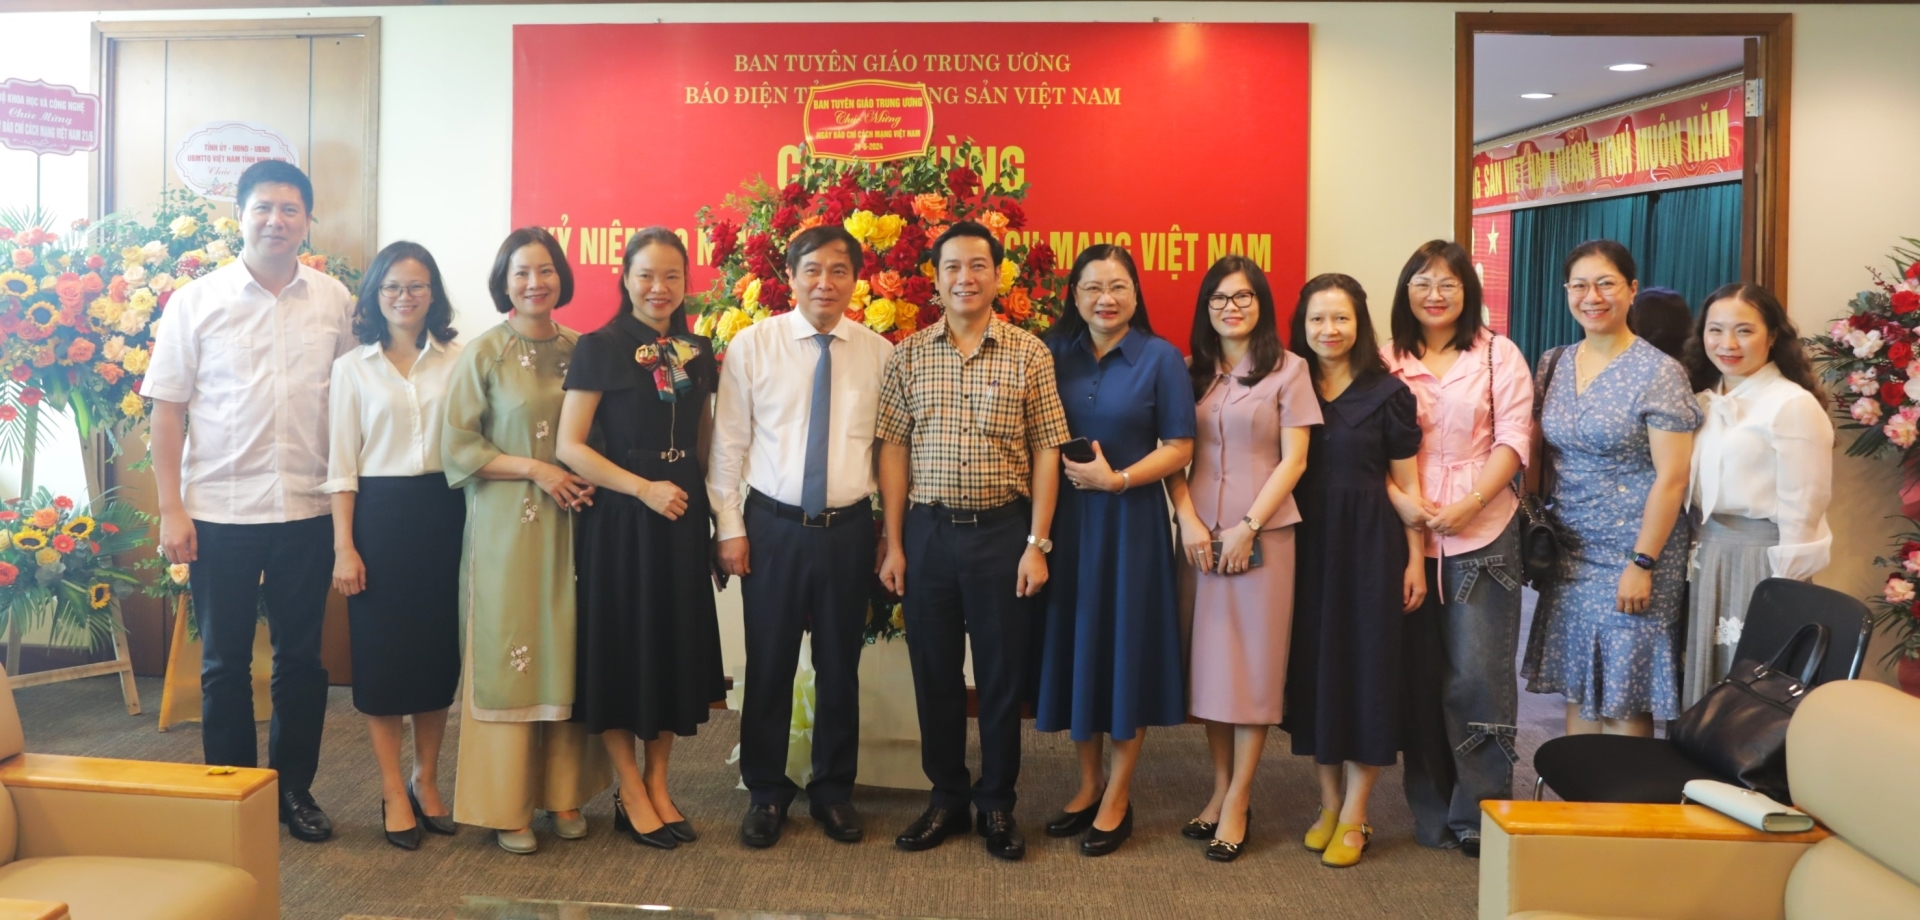 Phó Trưởng ban Tuyên giáo Trung ương cùng Đoàn công tác tặng hoa chúc mừng Báo Điện tử Đảng Cộng sản Việt Nam.